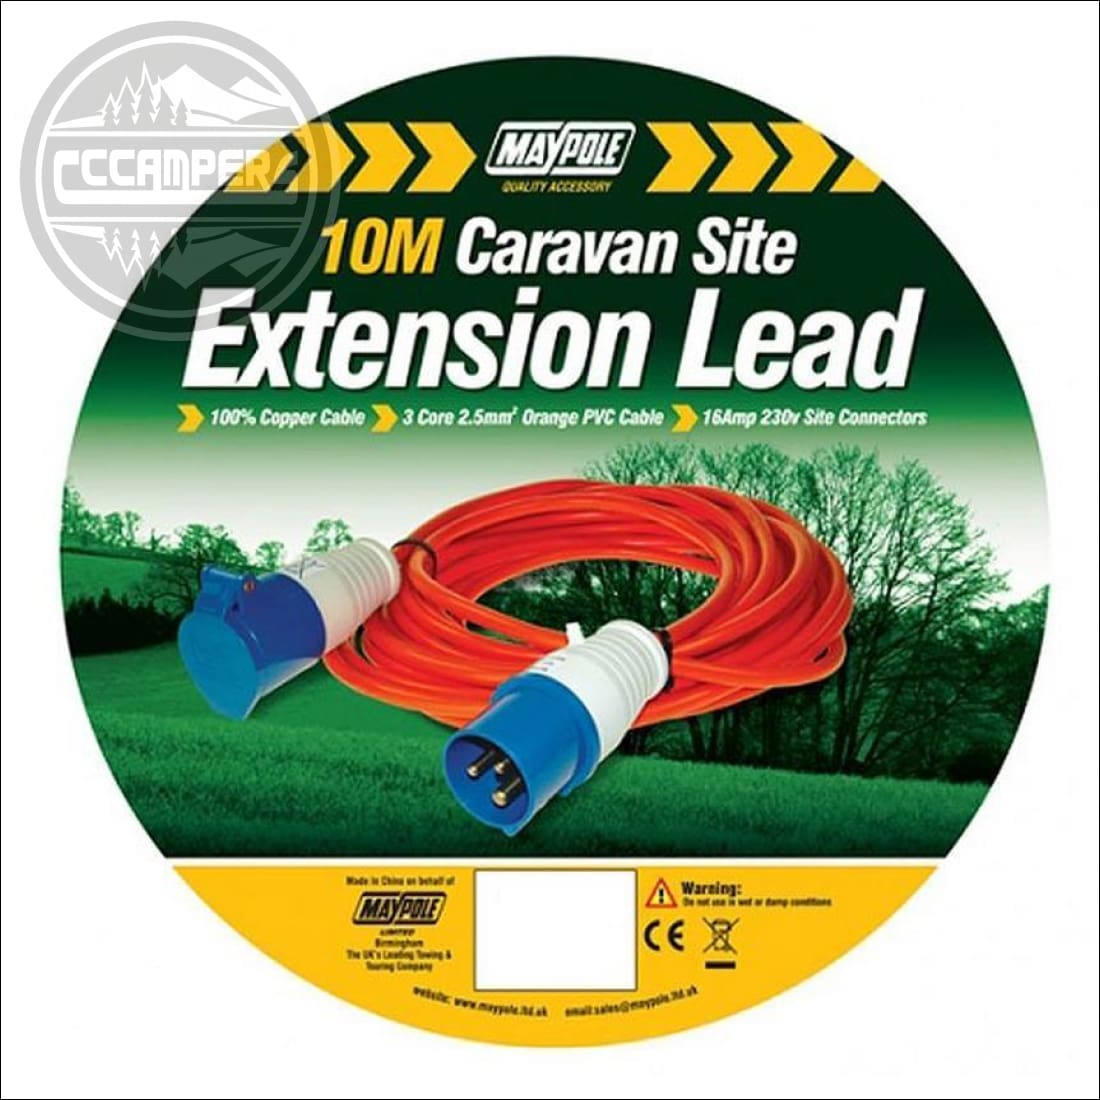 Caravan Site Extension Lead (10m, 230V) - cccampers.myshopify.com